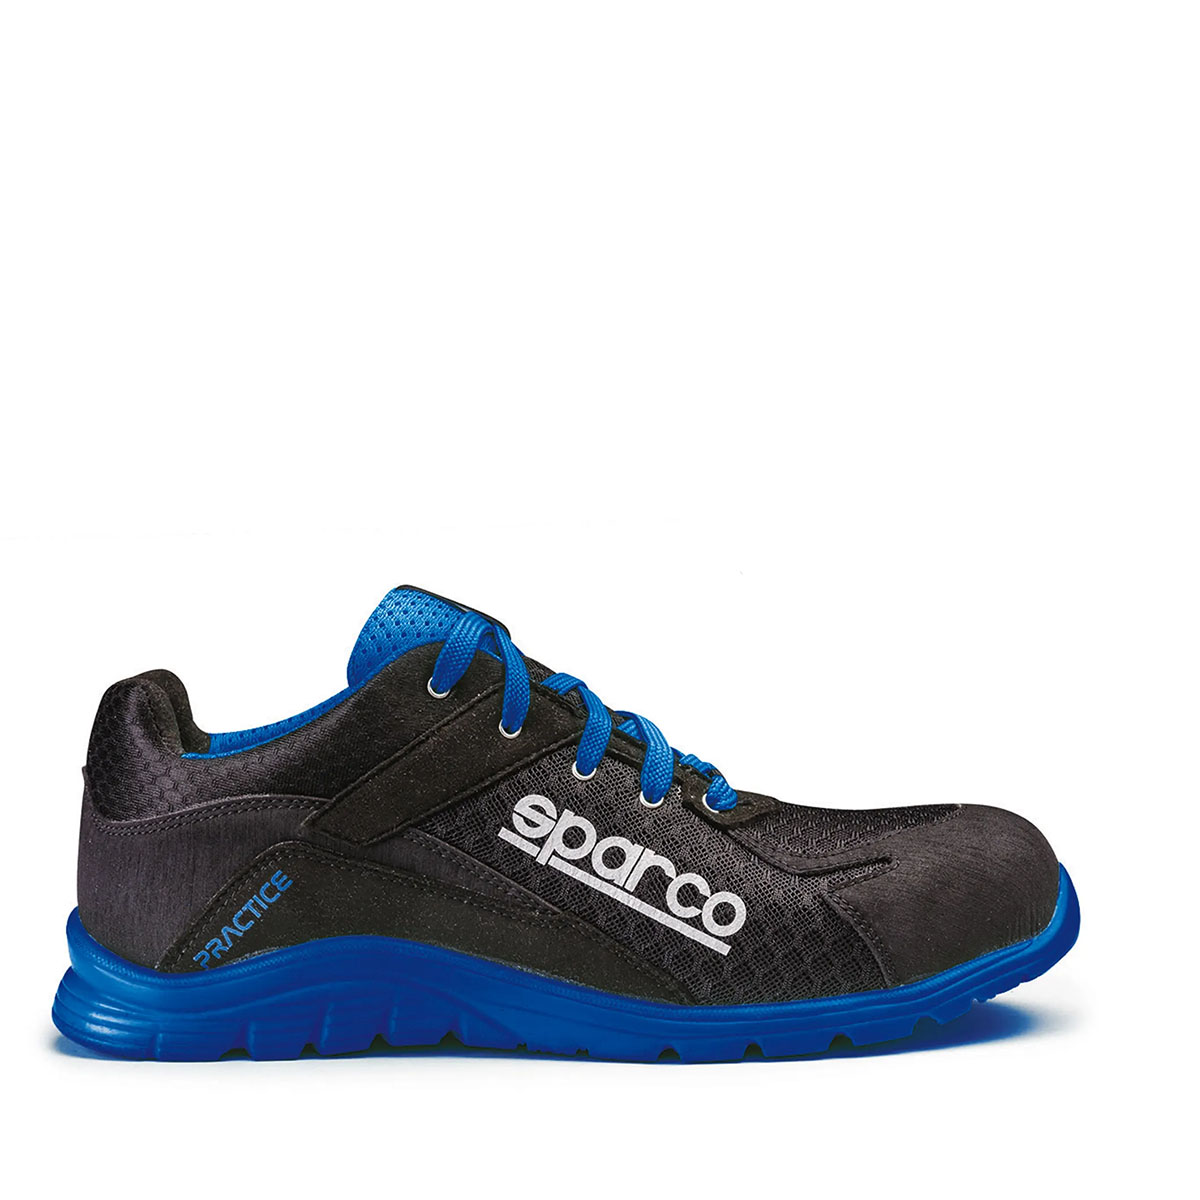 Sparco Zapatos de práctica Negro/Azul Talla 36